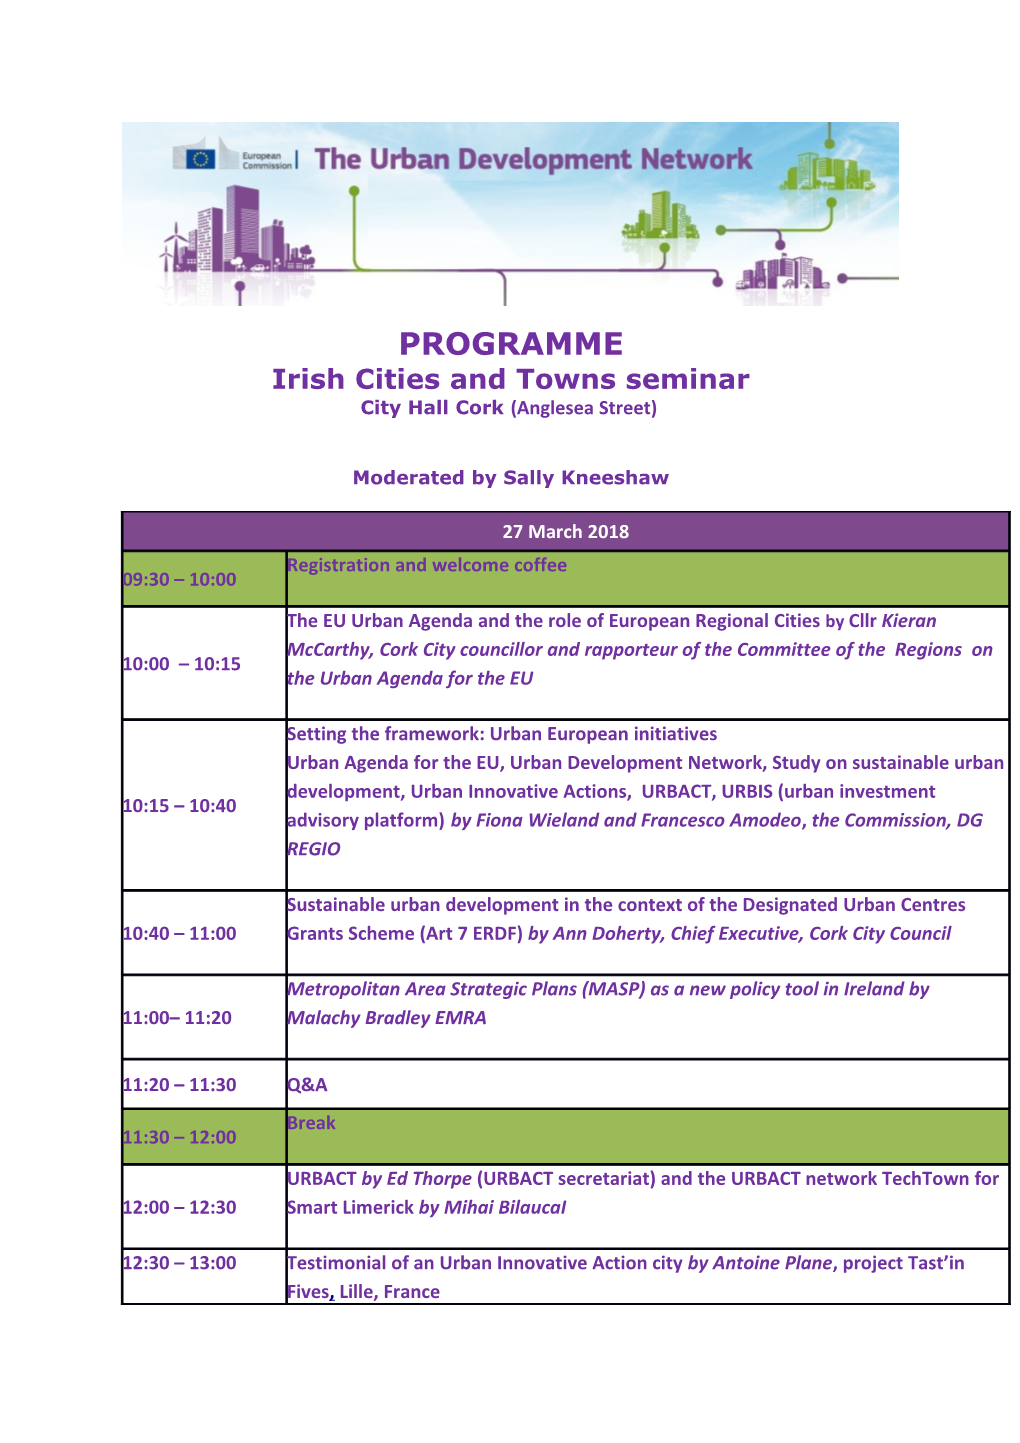 Irish Cities and Towns Seminar